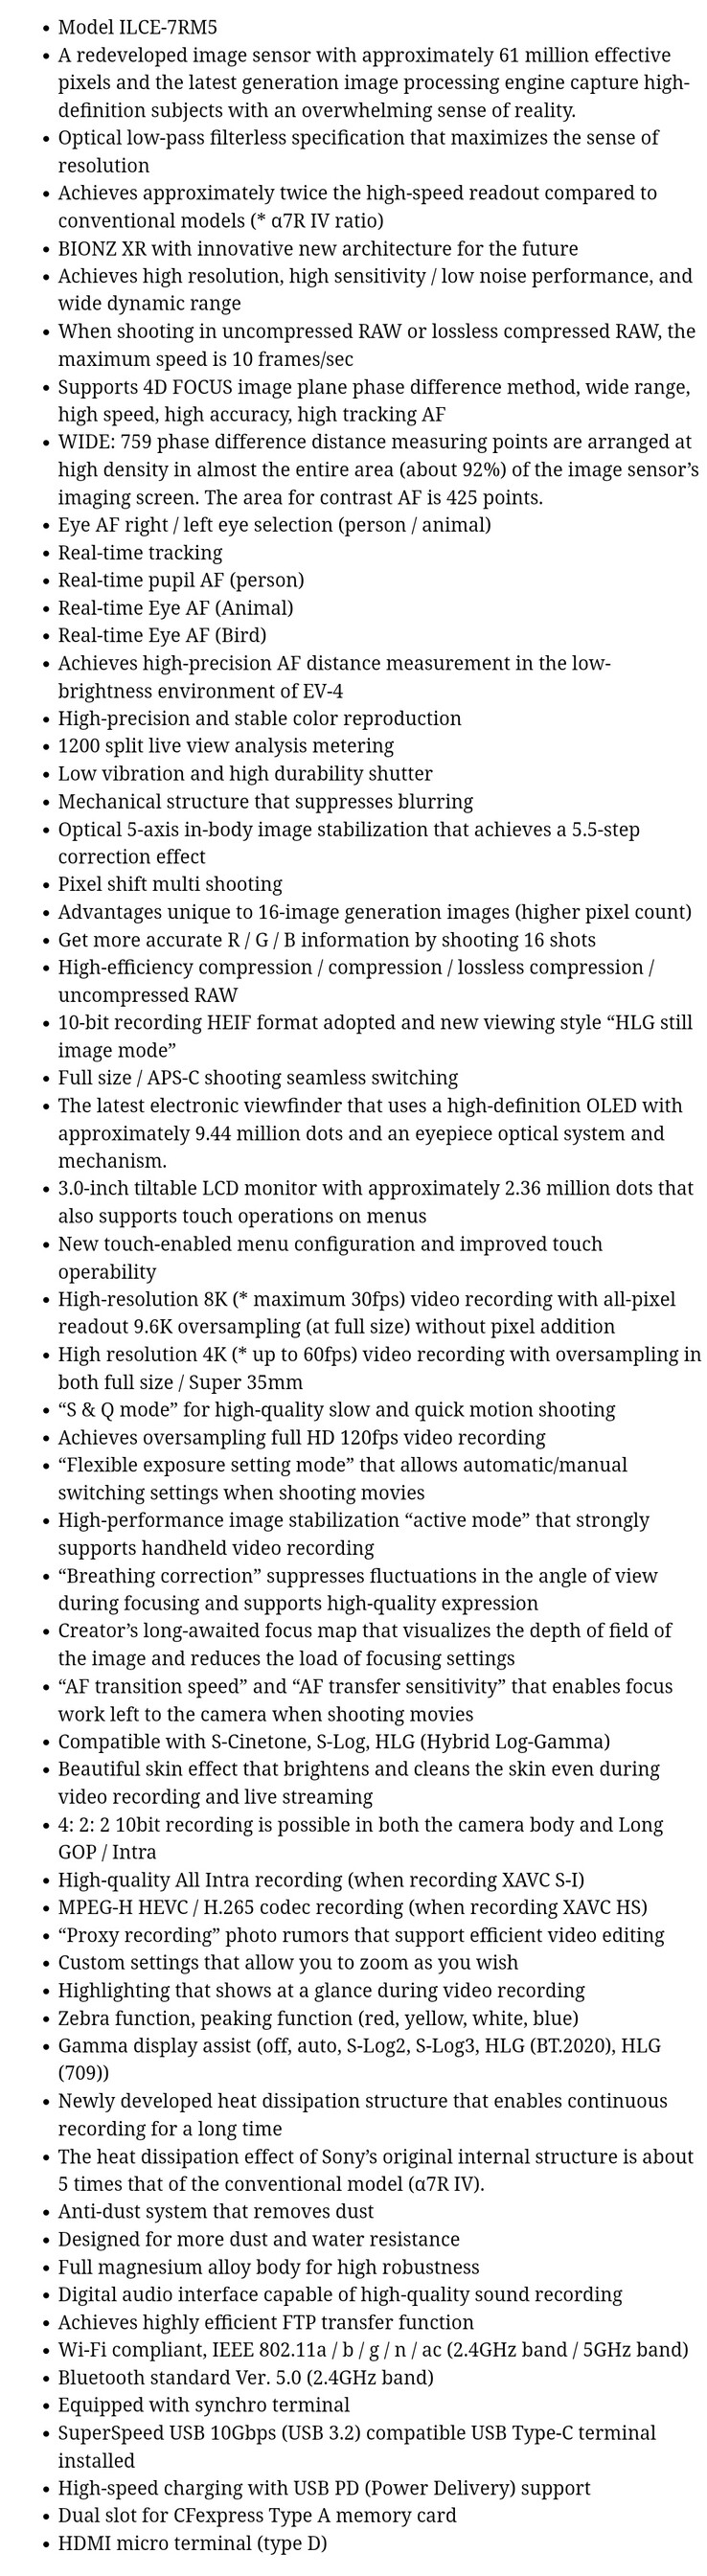 A suposta lista de especificações da Sony a7R V na íntegra. (Fonte: PhotoRumors)